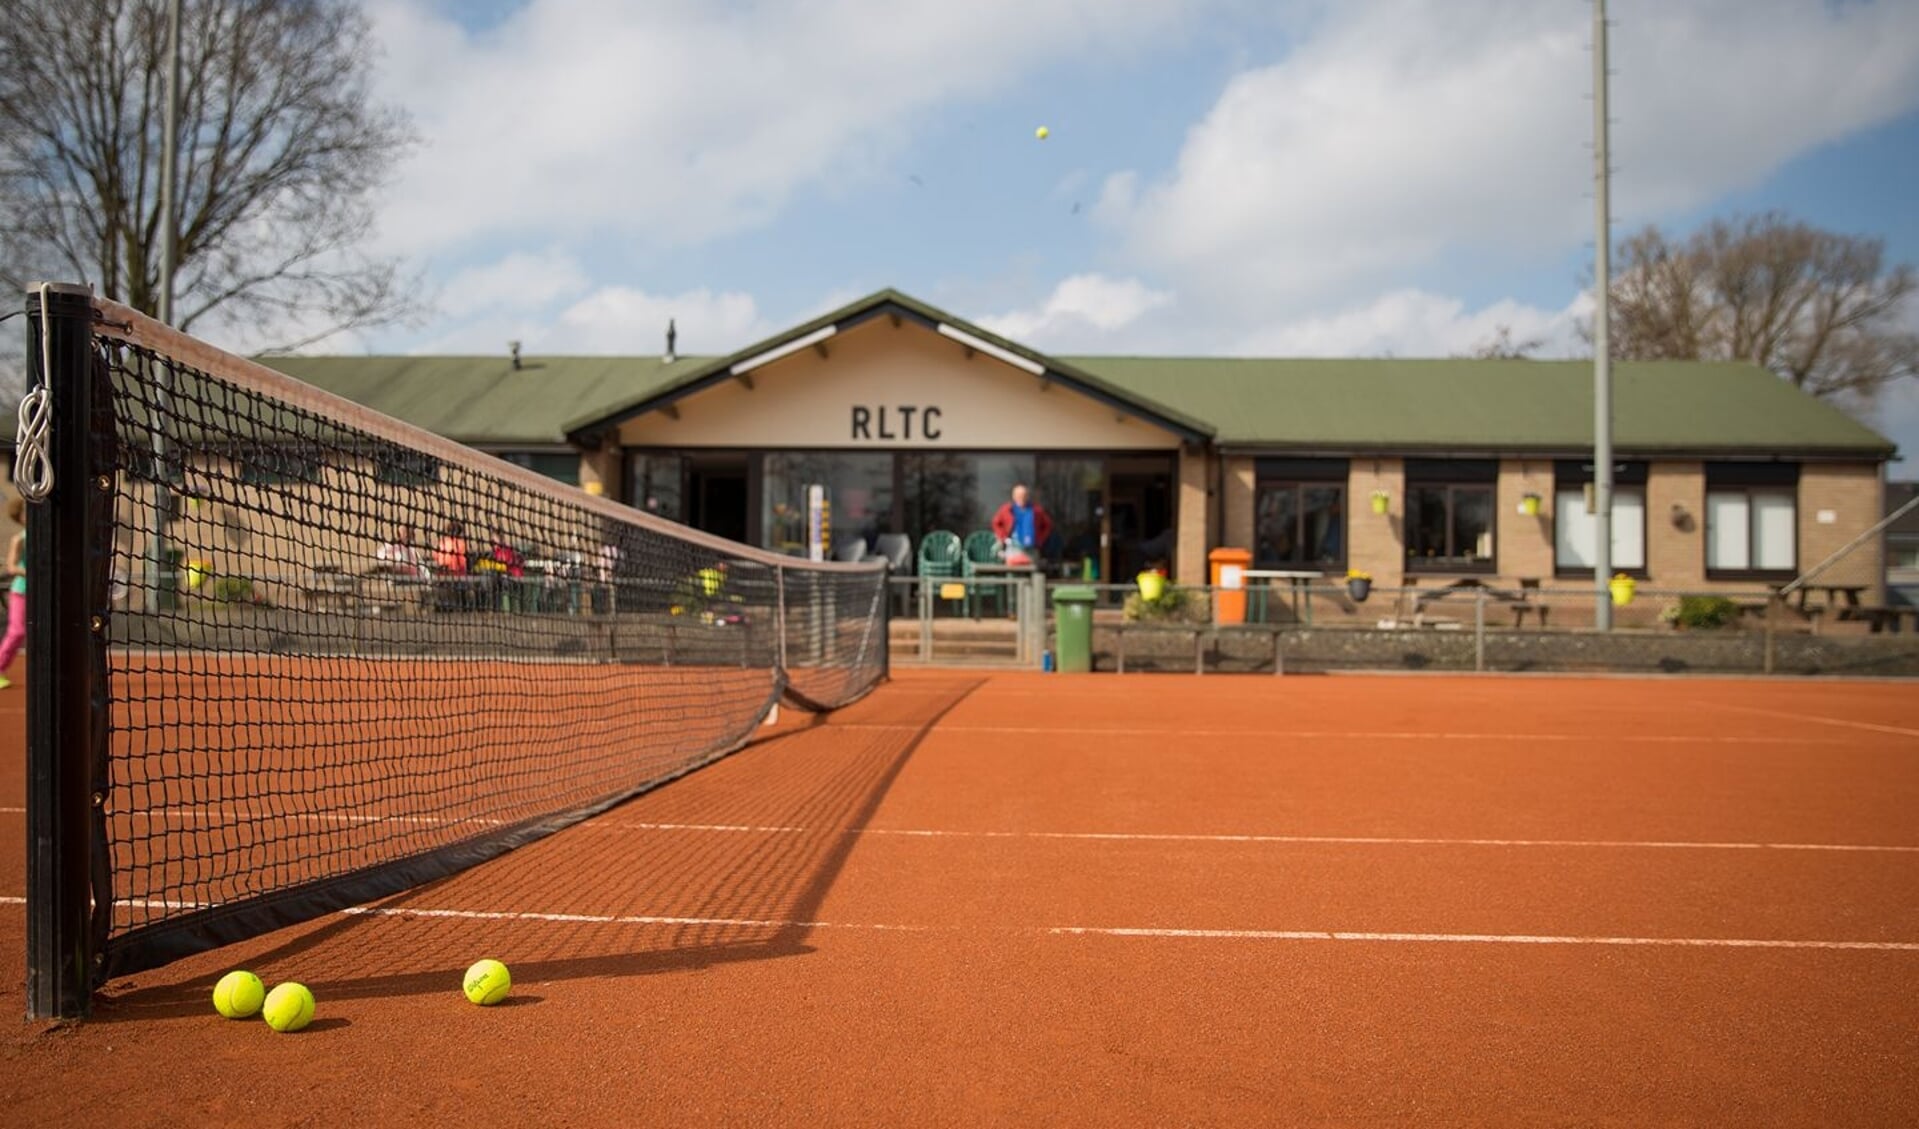 Op 3 april kan men kennismaken met tennis als sport tijdens de open dag van RLTC. 